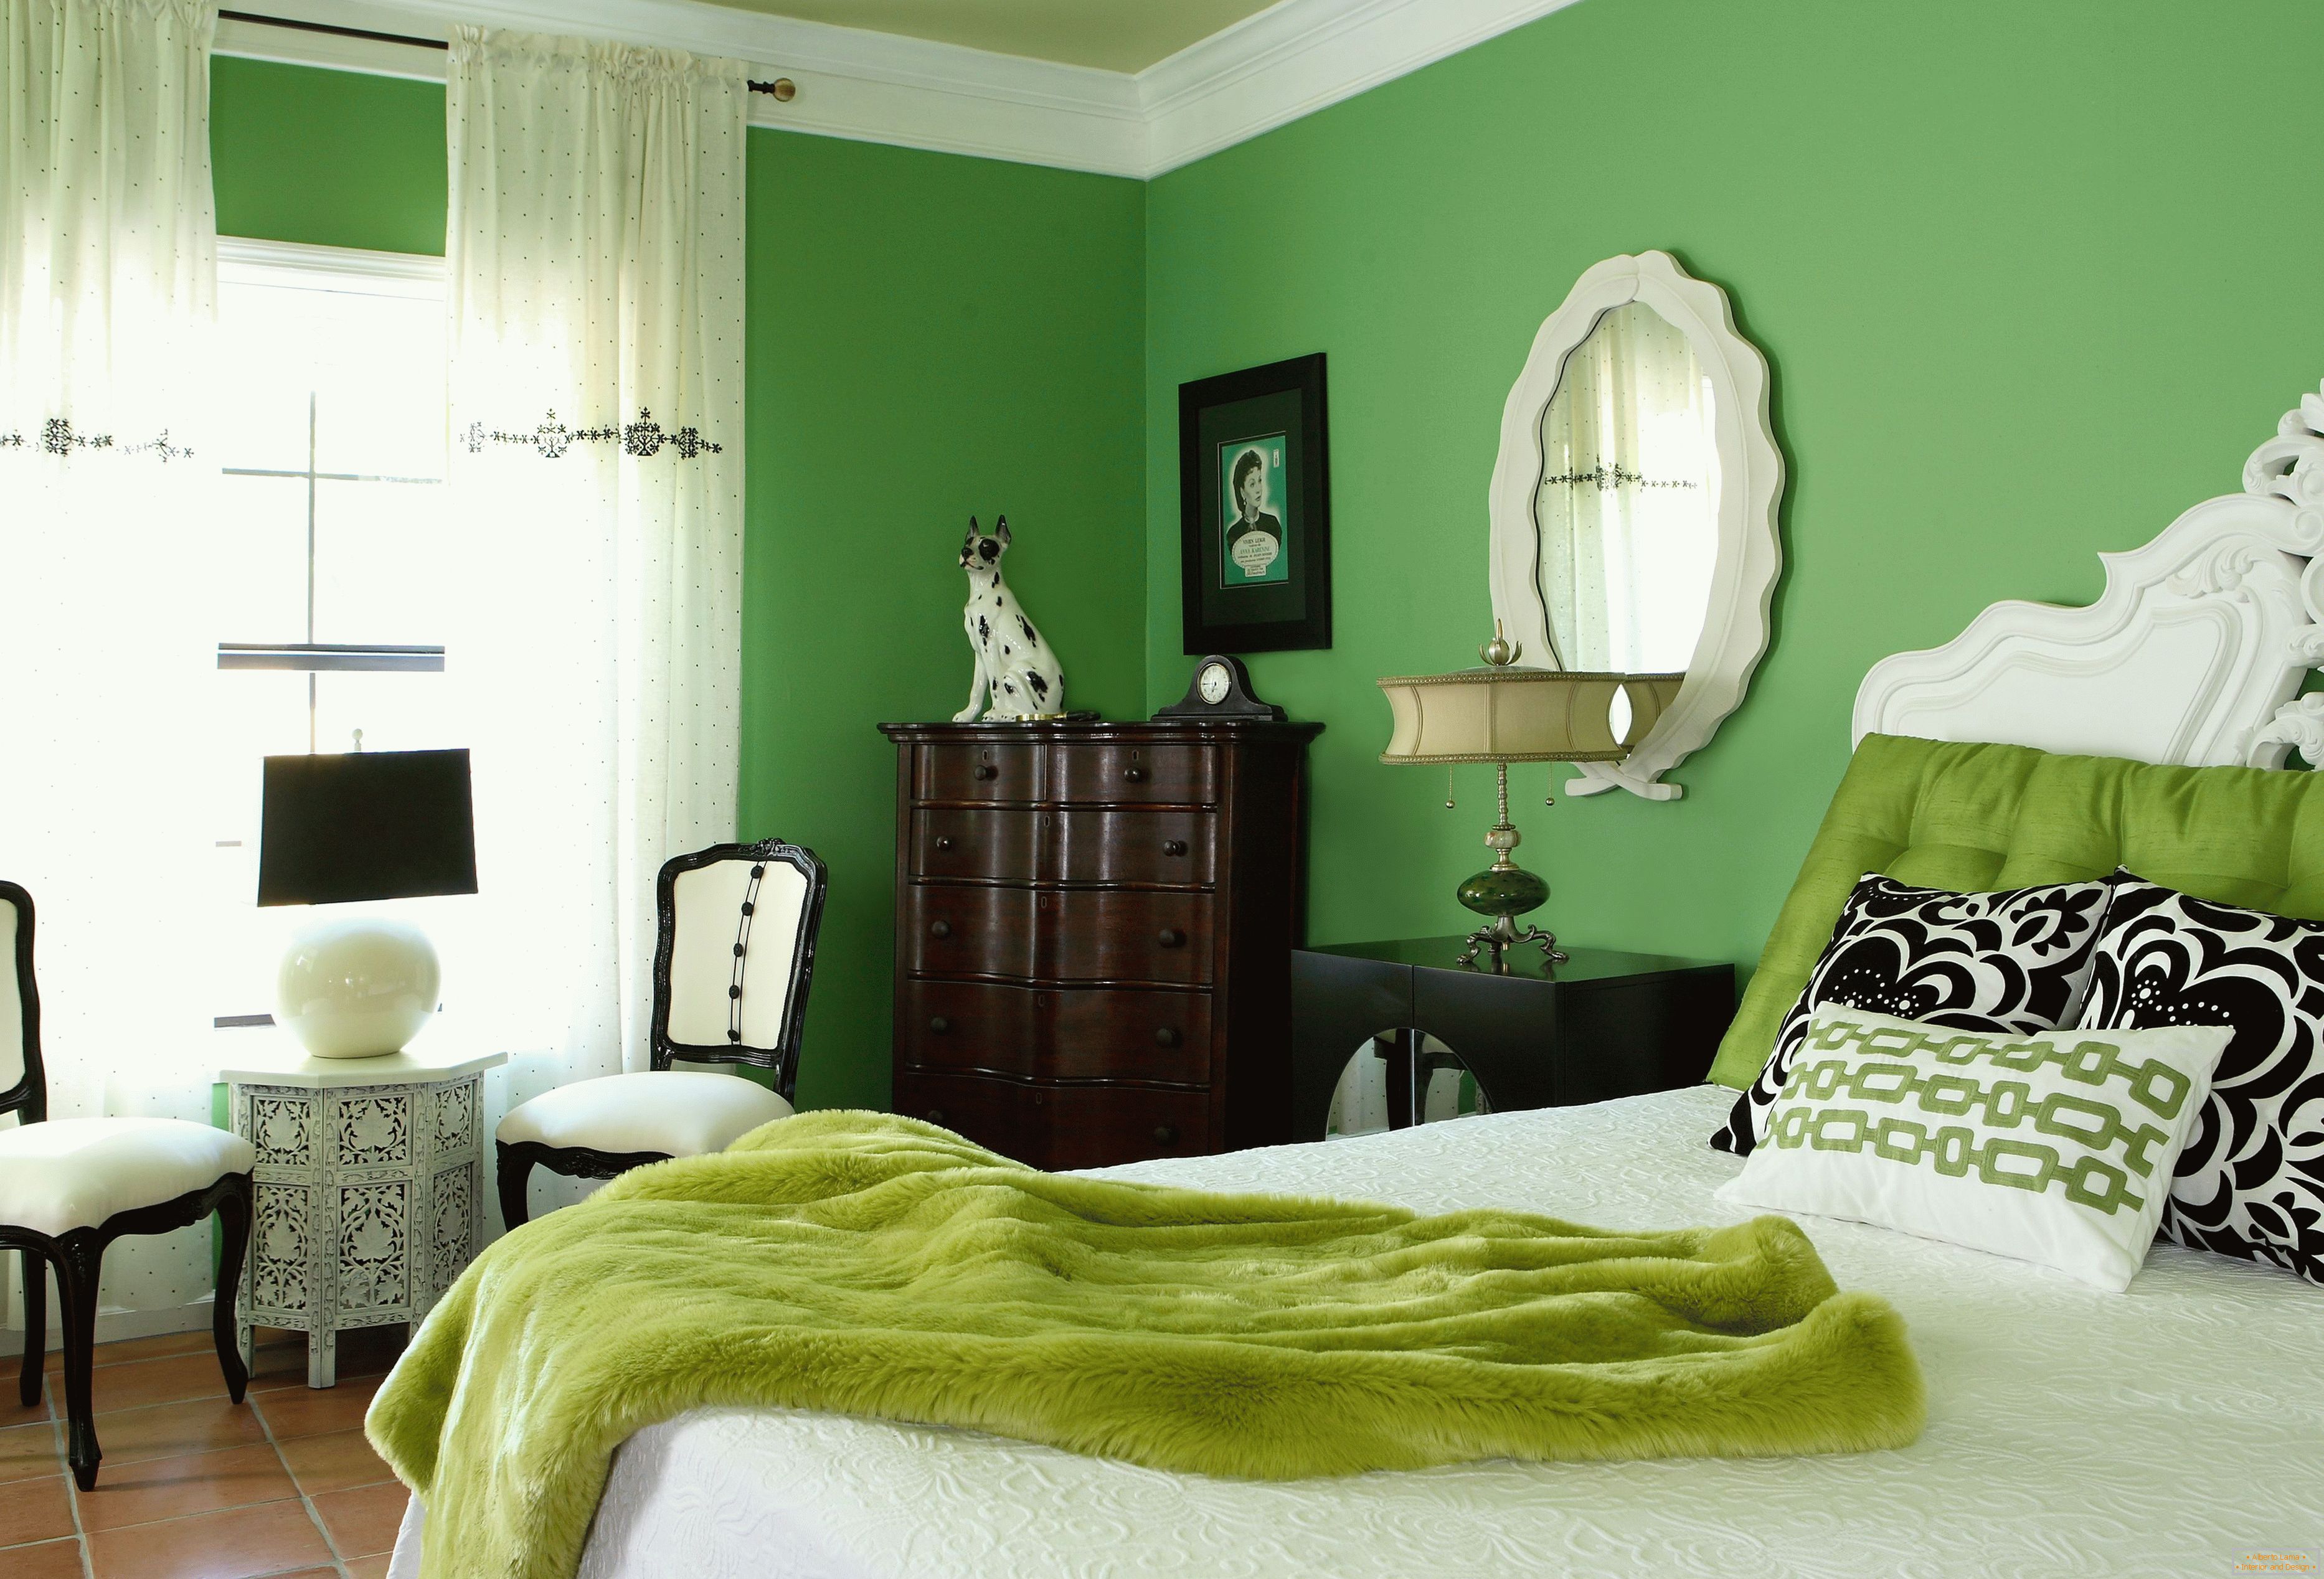 Dormitor în culori verzi